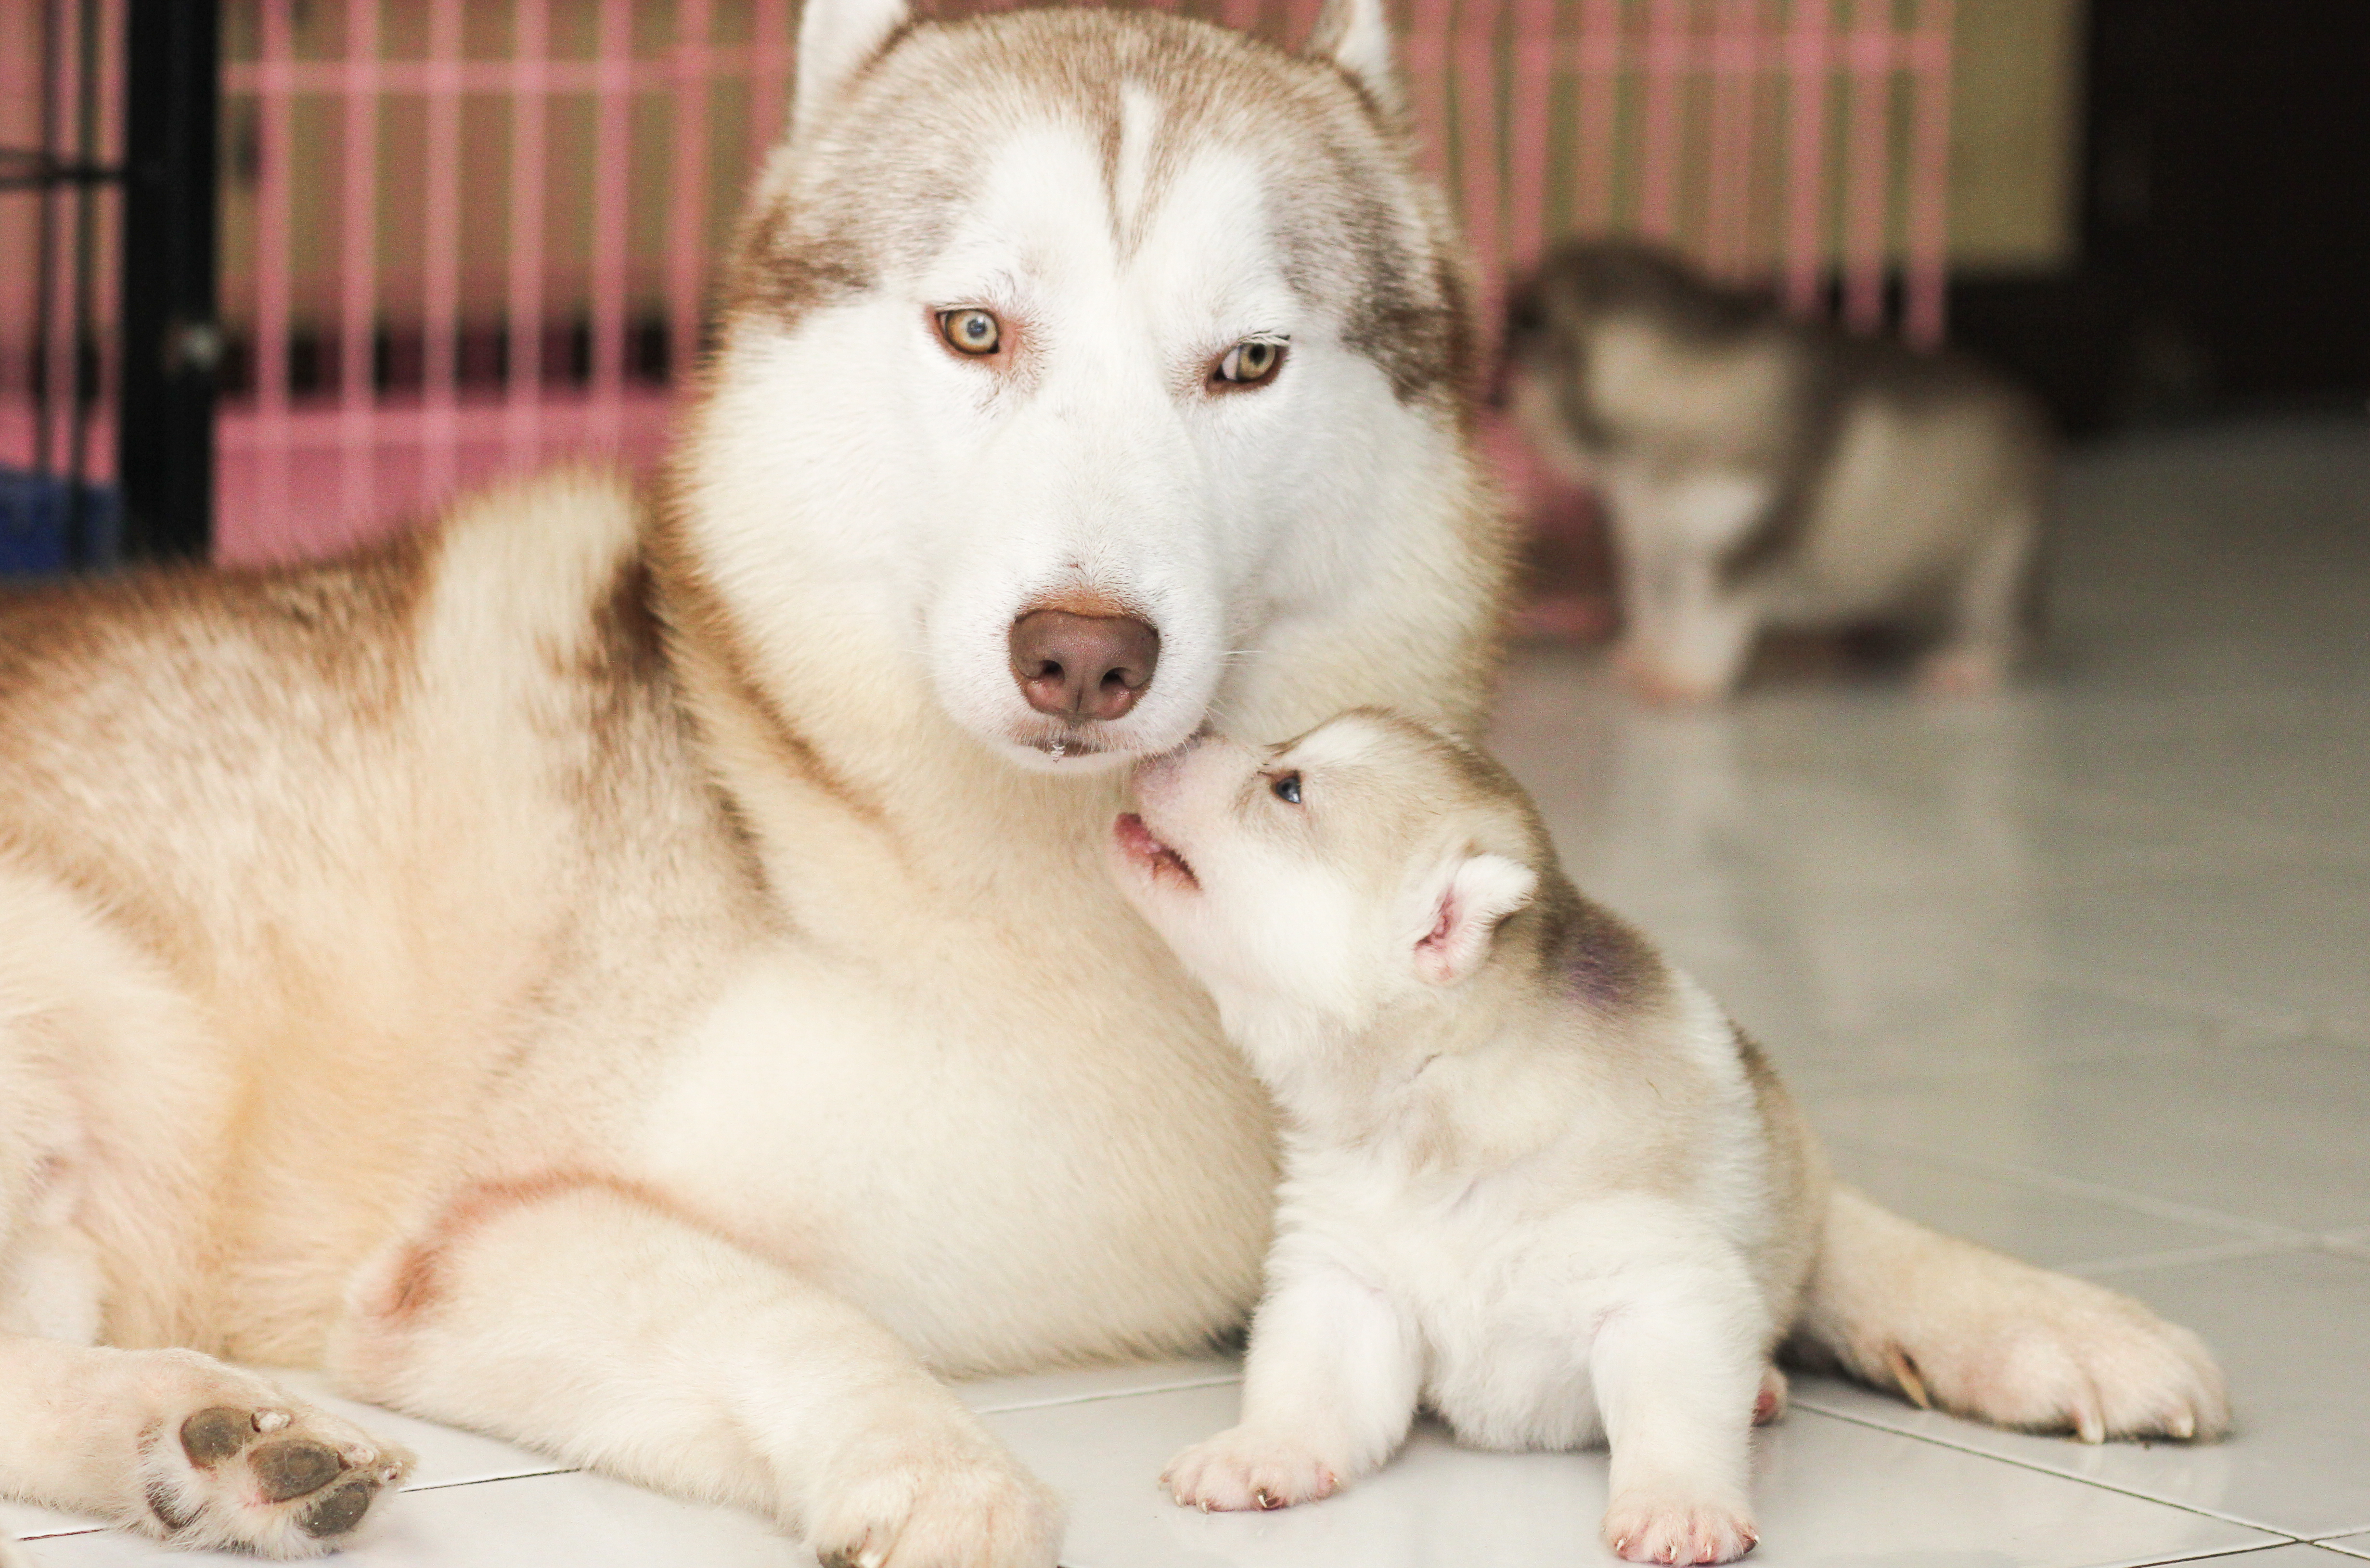 husky newborn puppies